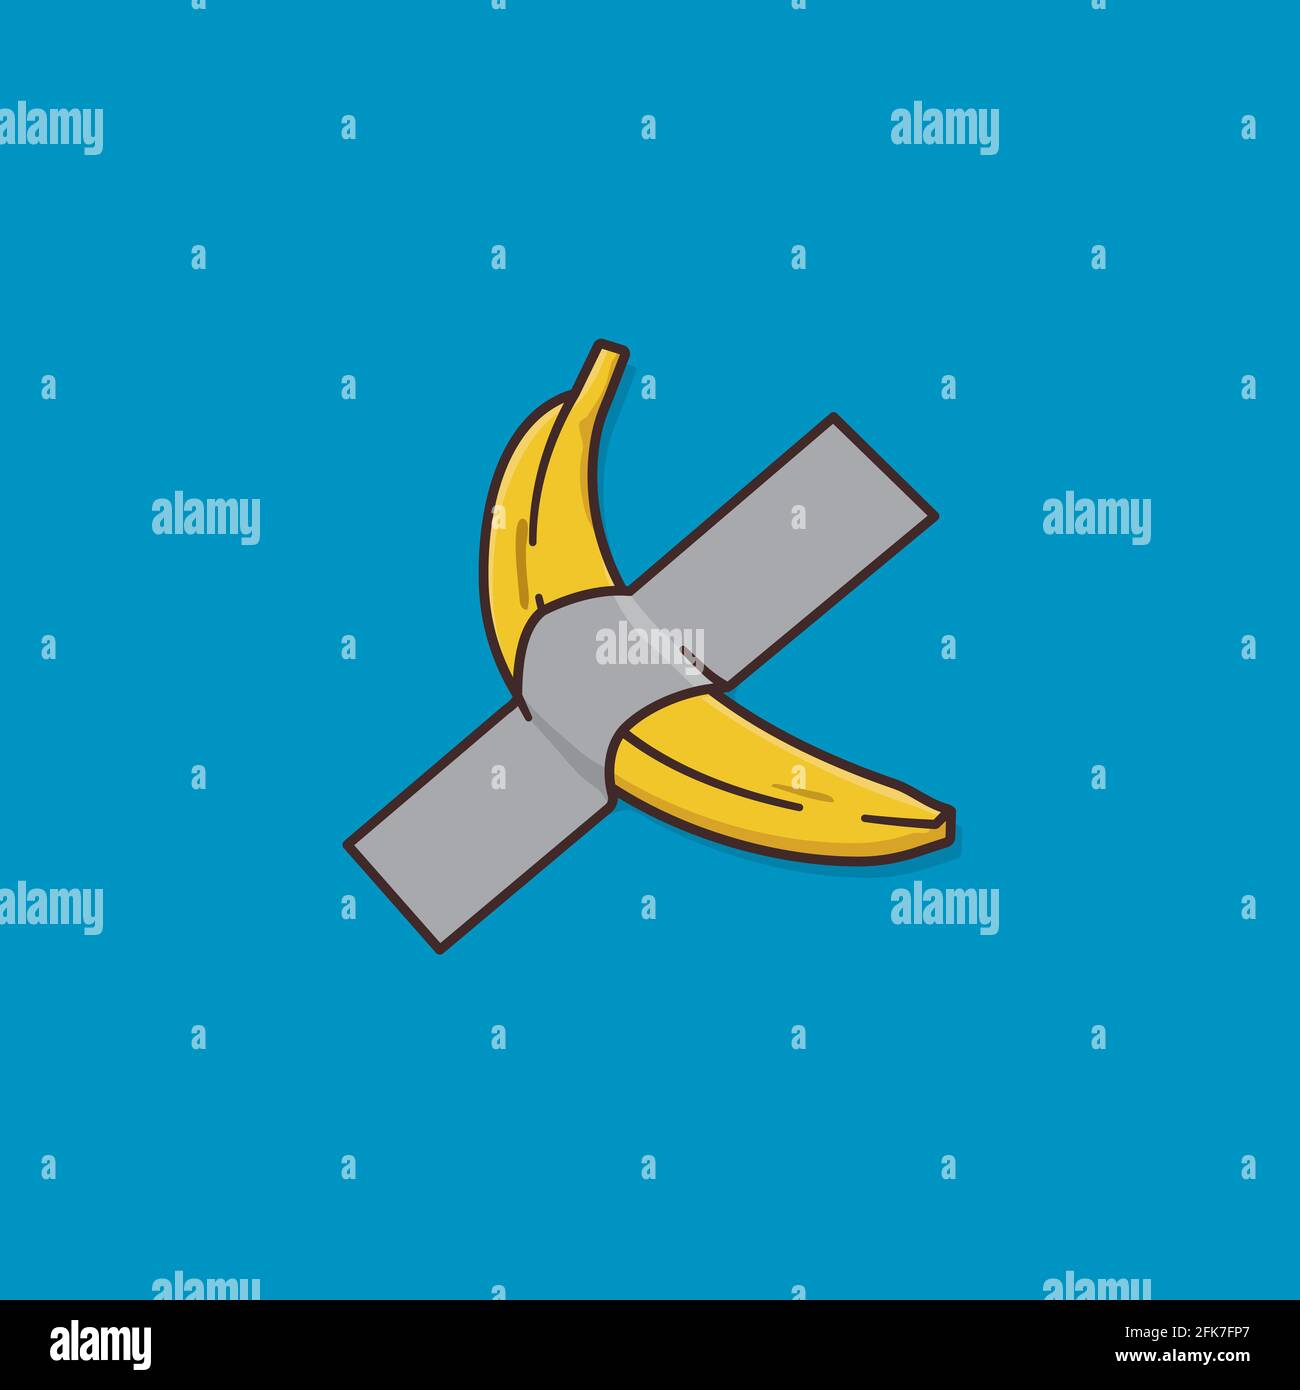 Banane montée au mur avec bande de conduit illustration vectorielle de dessin animé pour la Journée de l'absurdité le 20 novembre. Illustration de Vecteur